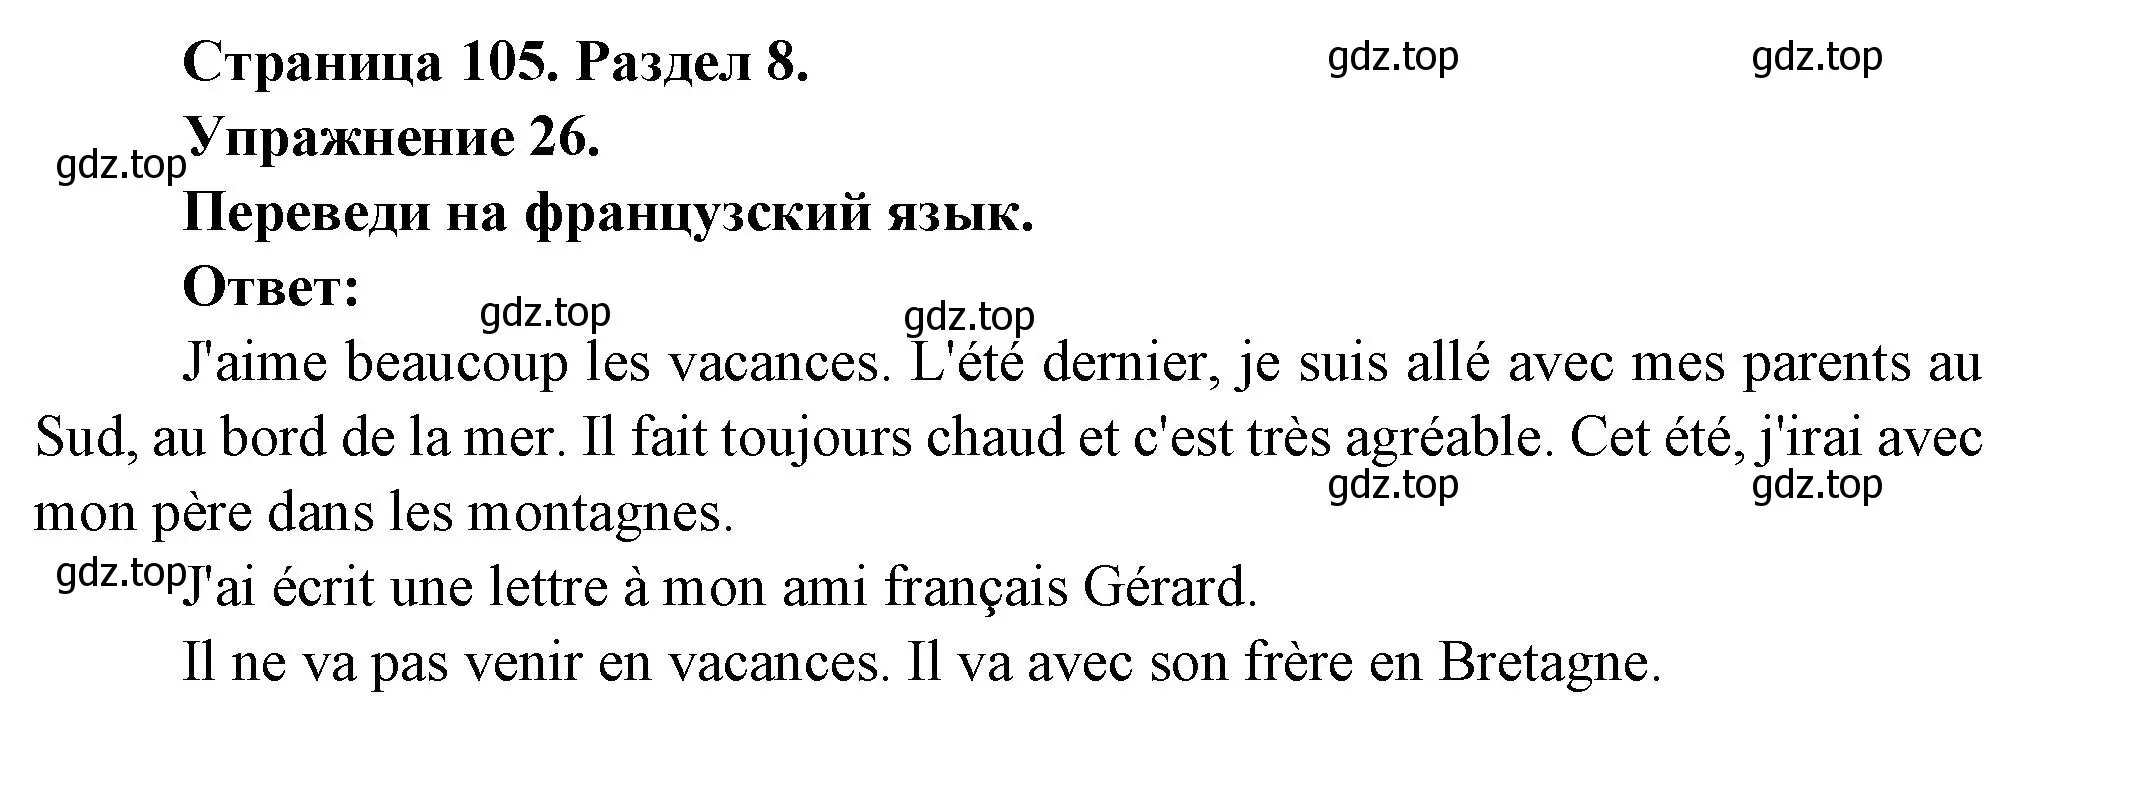 Решение номер 26 (страница 105) гдз по французскому языку 5 класс Береговская, Белосельская, учебник 2 часть